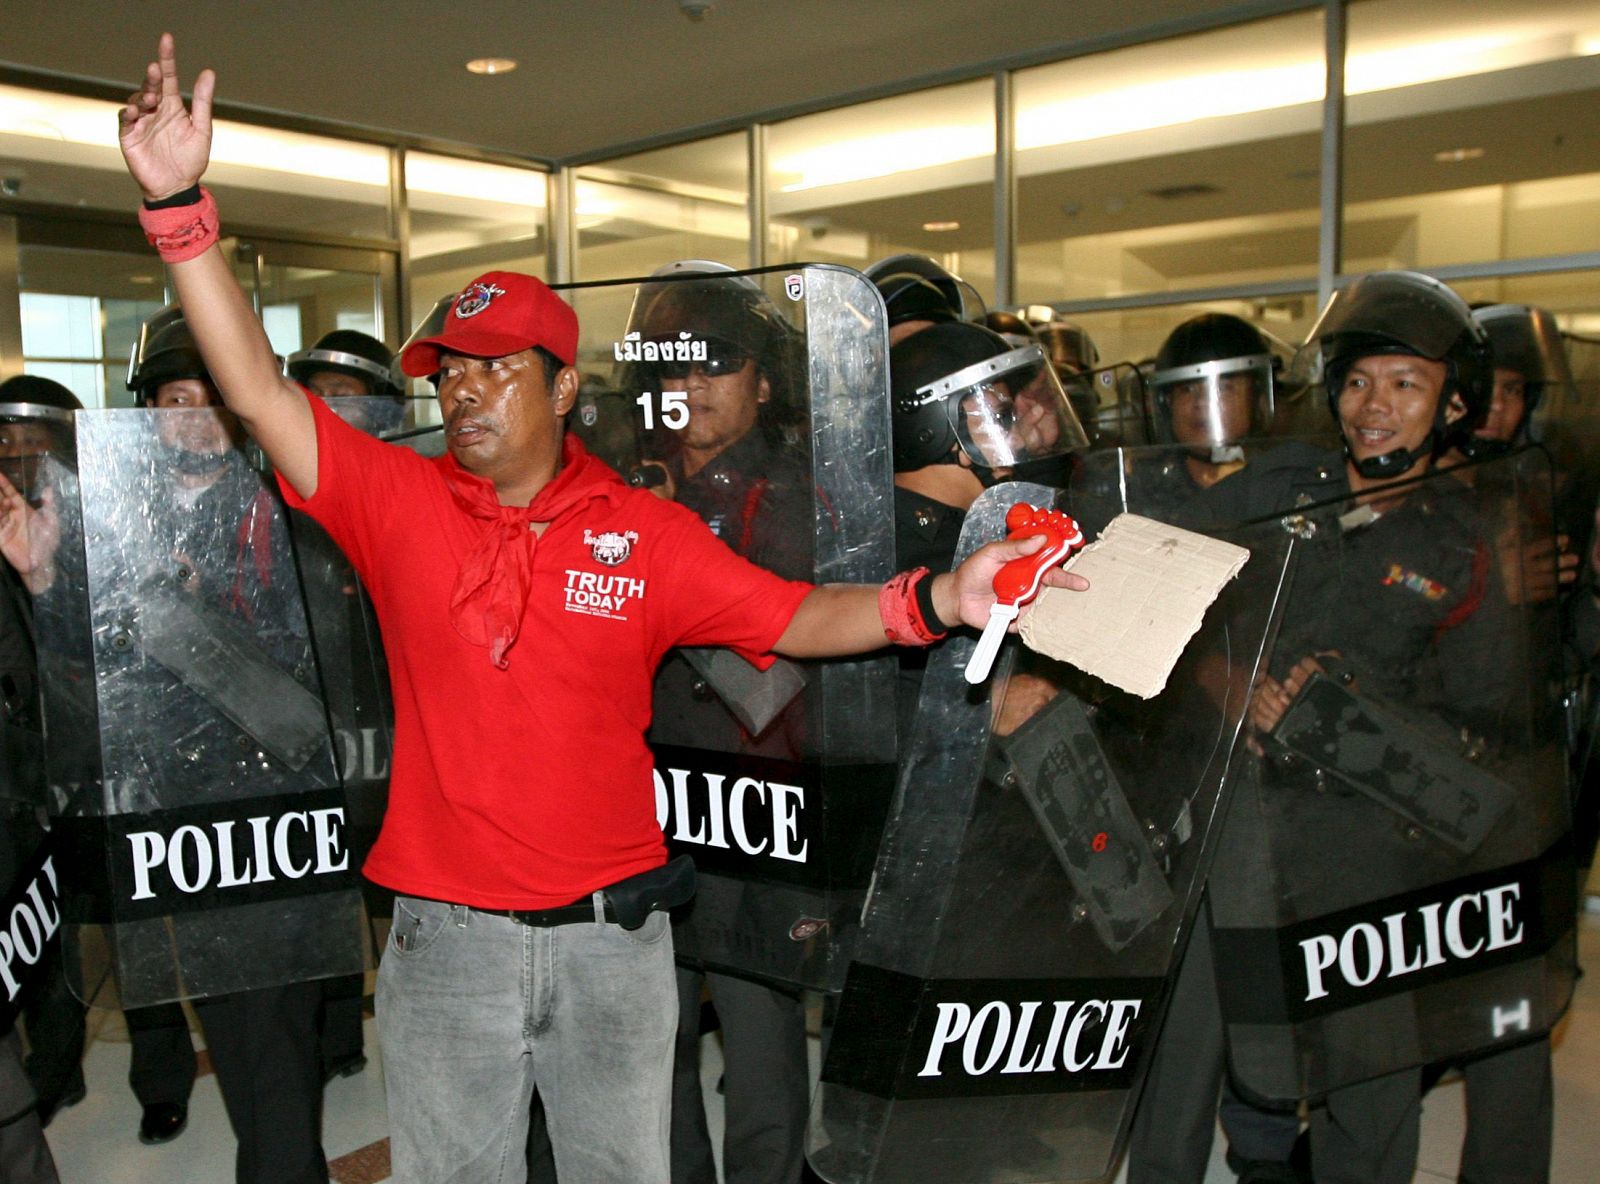 Un manifestante de los "camisas rojas" se coloca ante una barrera de policias antidisturbios tras irrumpir en la Comisión Electoral de Tailandia